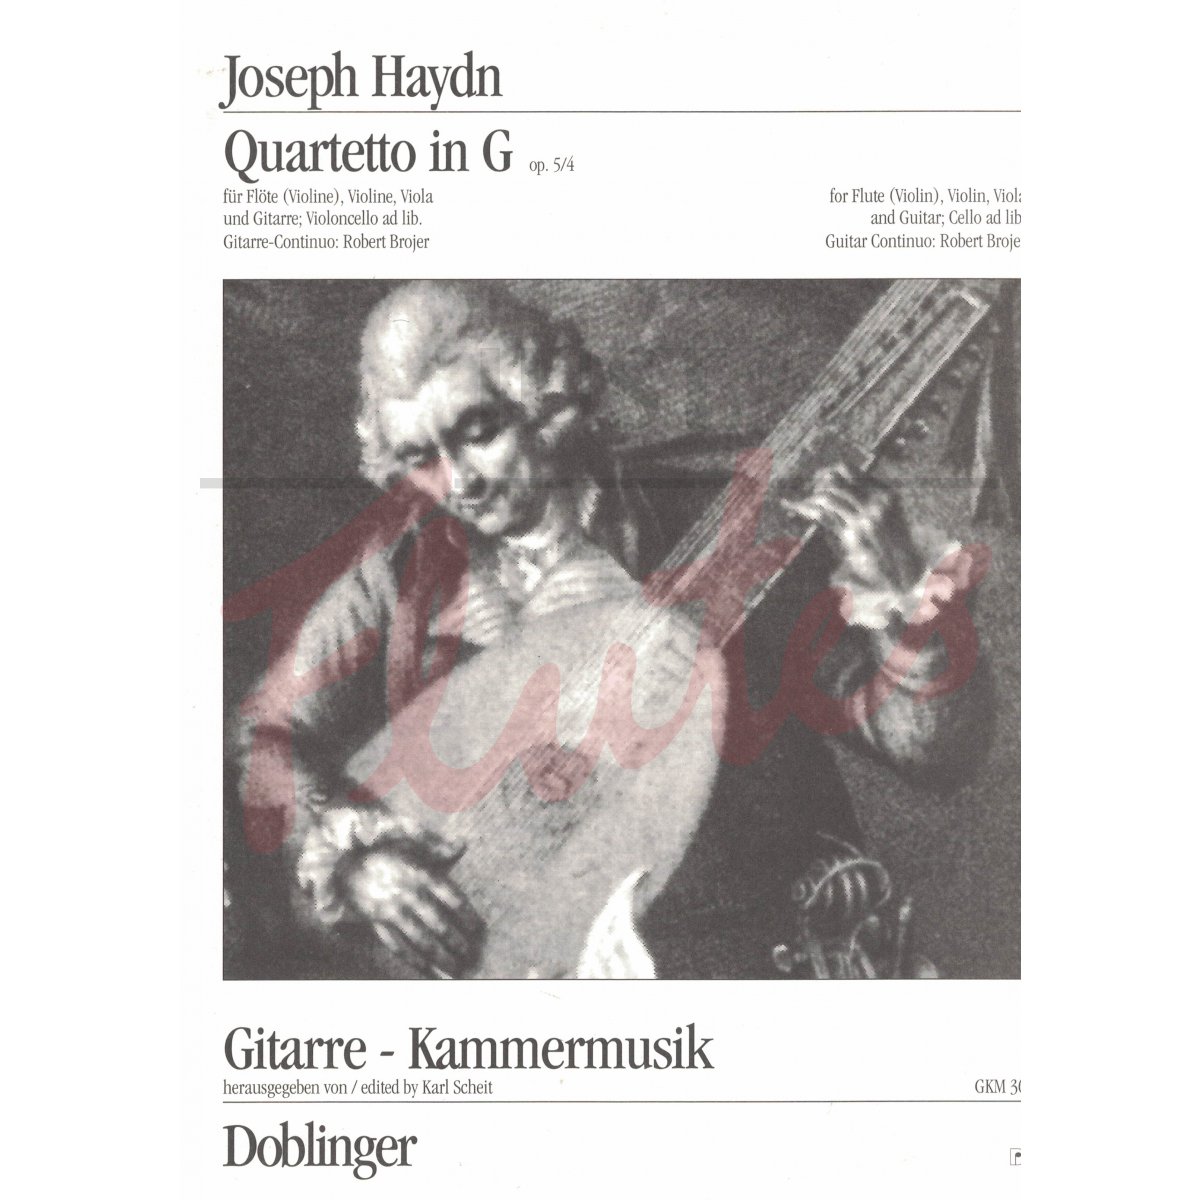 Quartet in G for Flute, Violin, Viola and Guitar (Cello ad lib.)